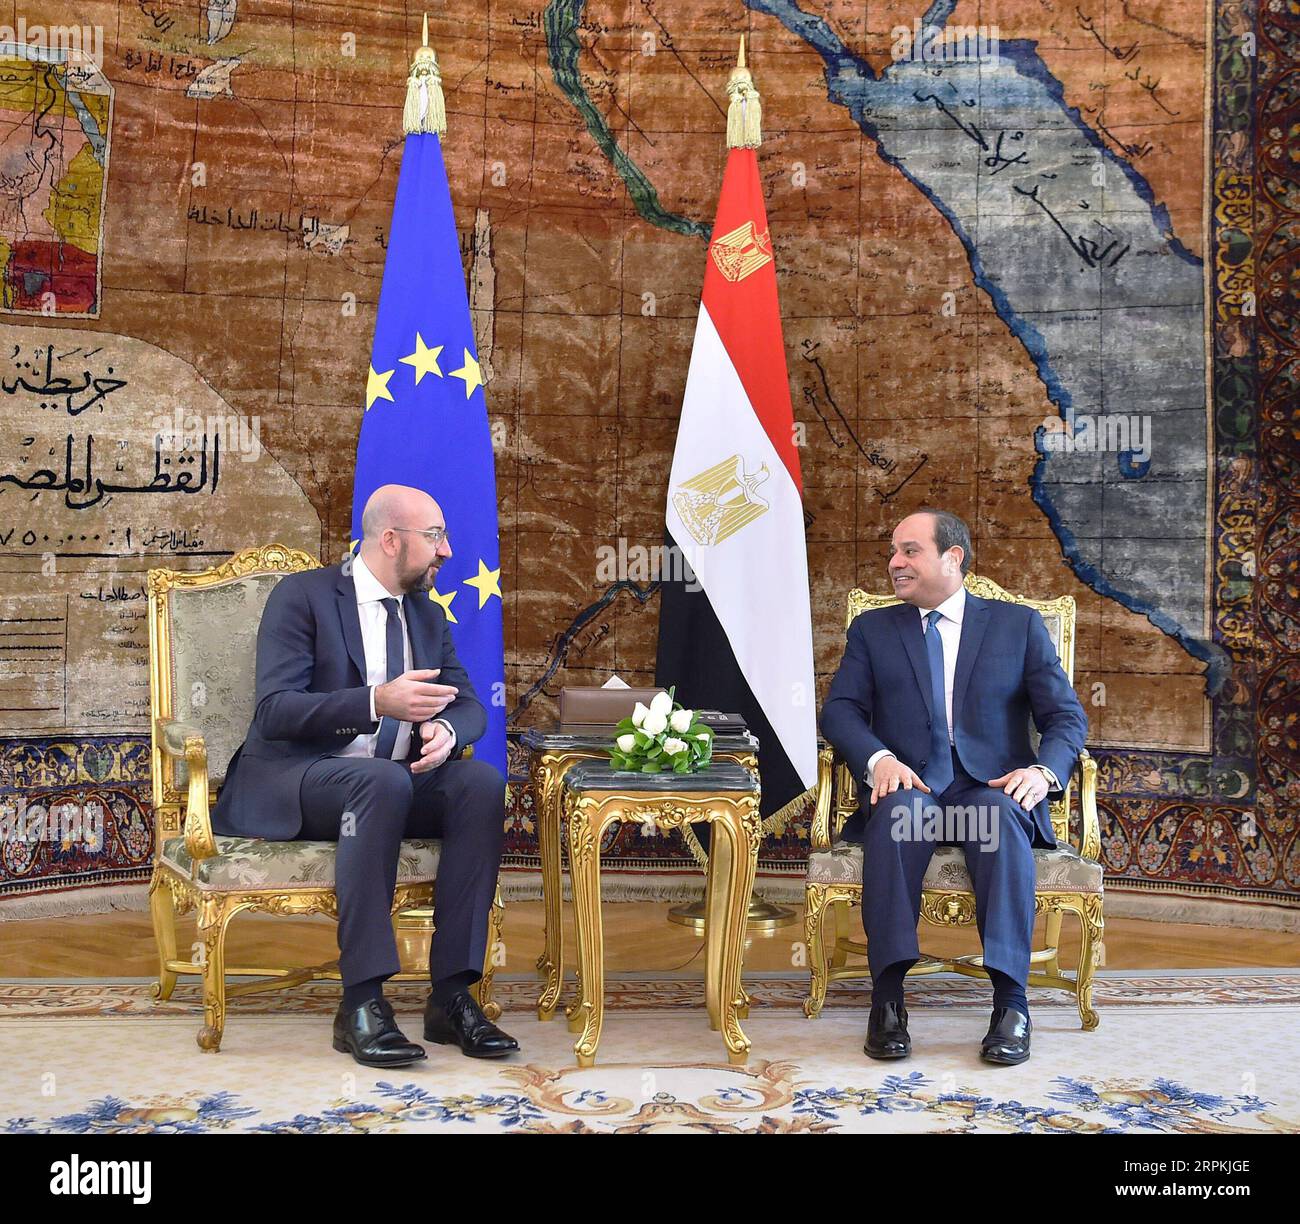 200112 -- CAIRO, 12 gennaio 2020 Xinhua -- il presidente egiziano Abdel-Fattah al-Sisi R incontra con il presidente del Consiglio europeo Charles Michel al Cairo, Egitto, 12 gennaio 2020. MENA/Handout via Xinhua EGITTO-CAIRO-EGIZIANO PRESIDENTE-CONSIGLIO EUROPEO PRESIDENTE-RIUNIONE PUBLICATIONxNOTxINxCHN Foto Stock